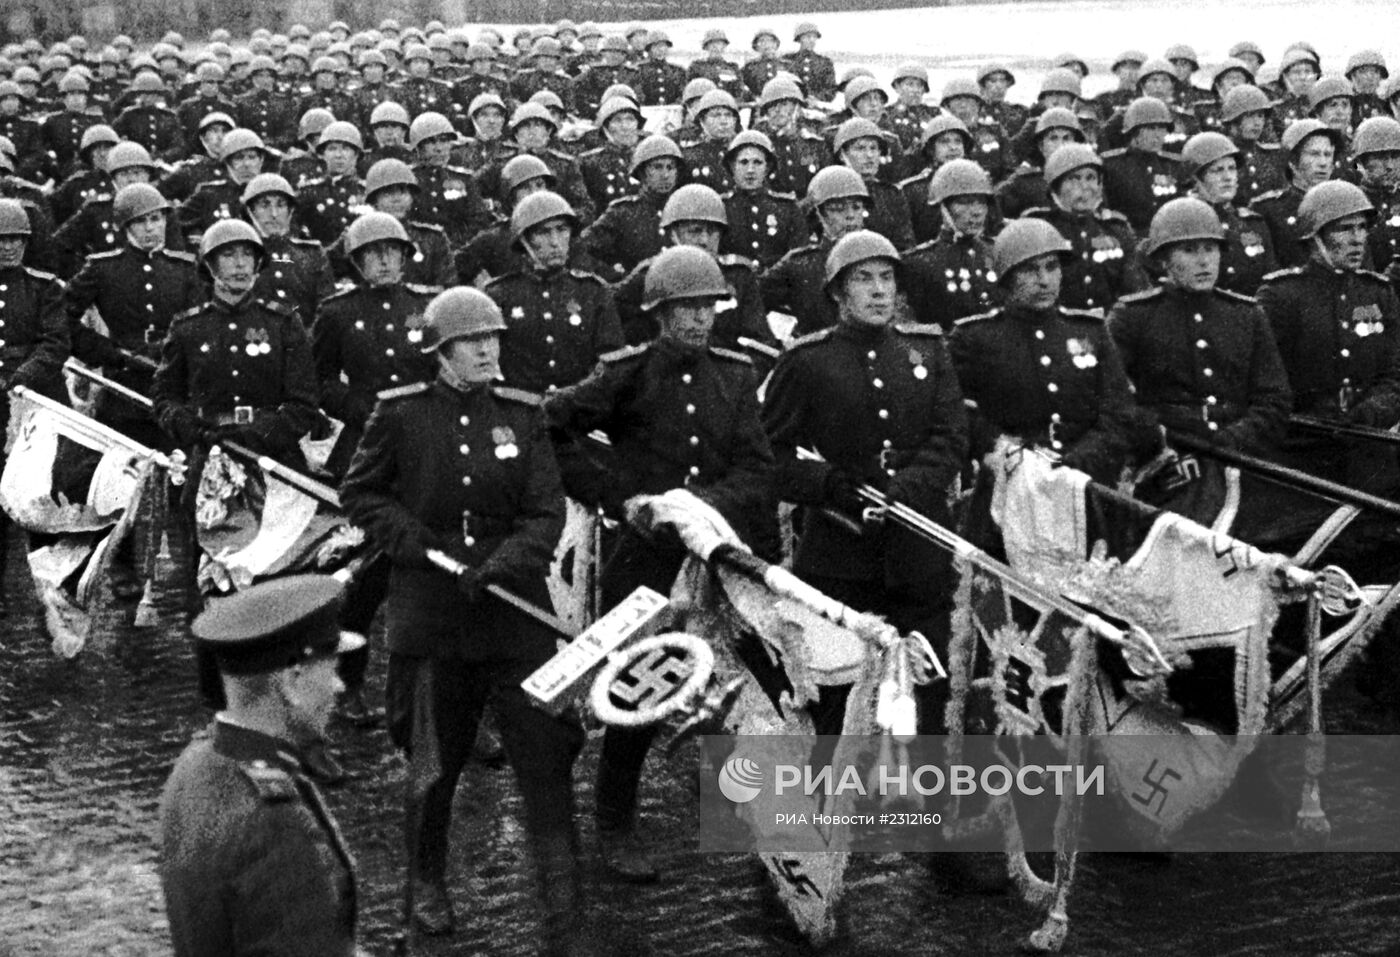 Кадр из фильма "Великая победа советского народа"